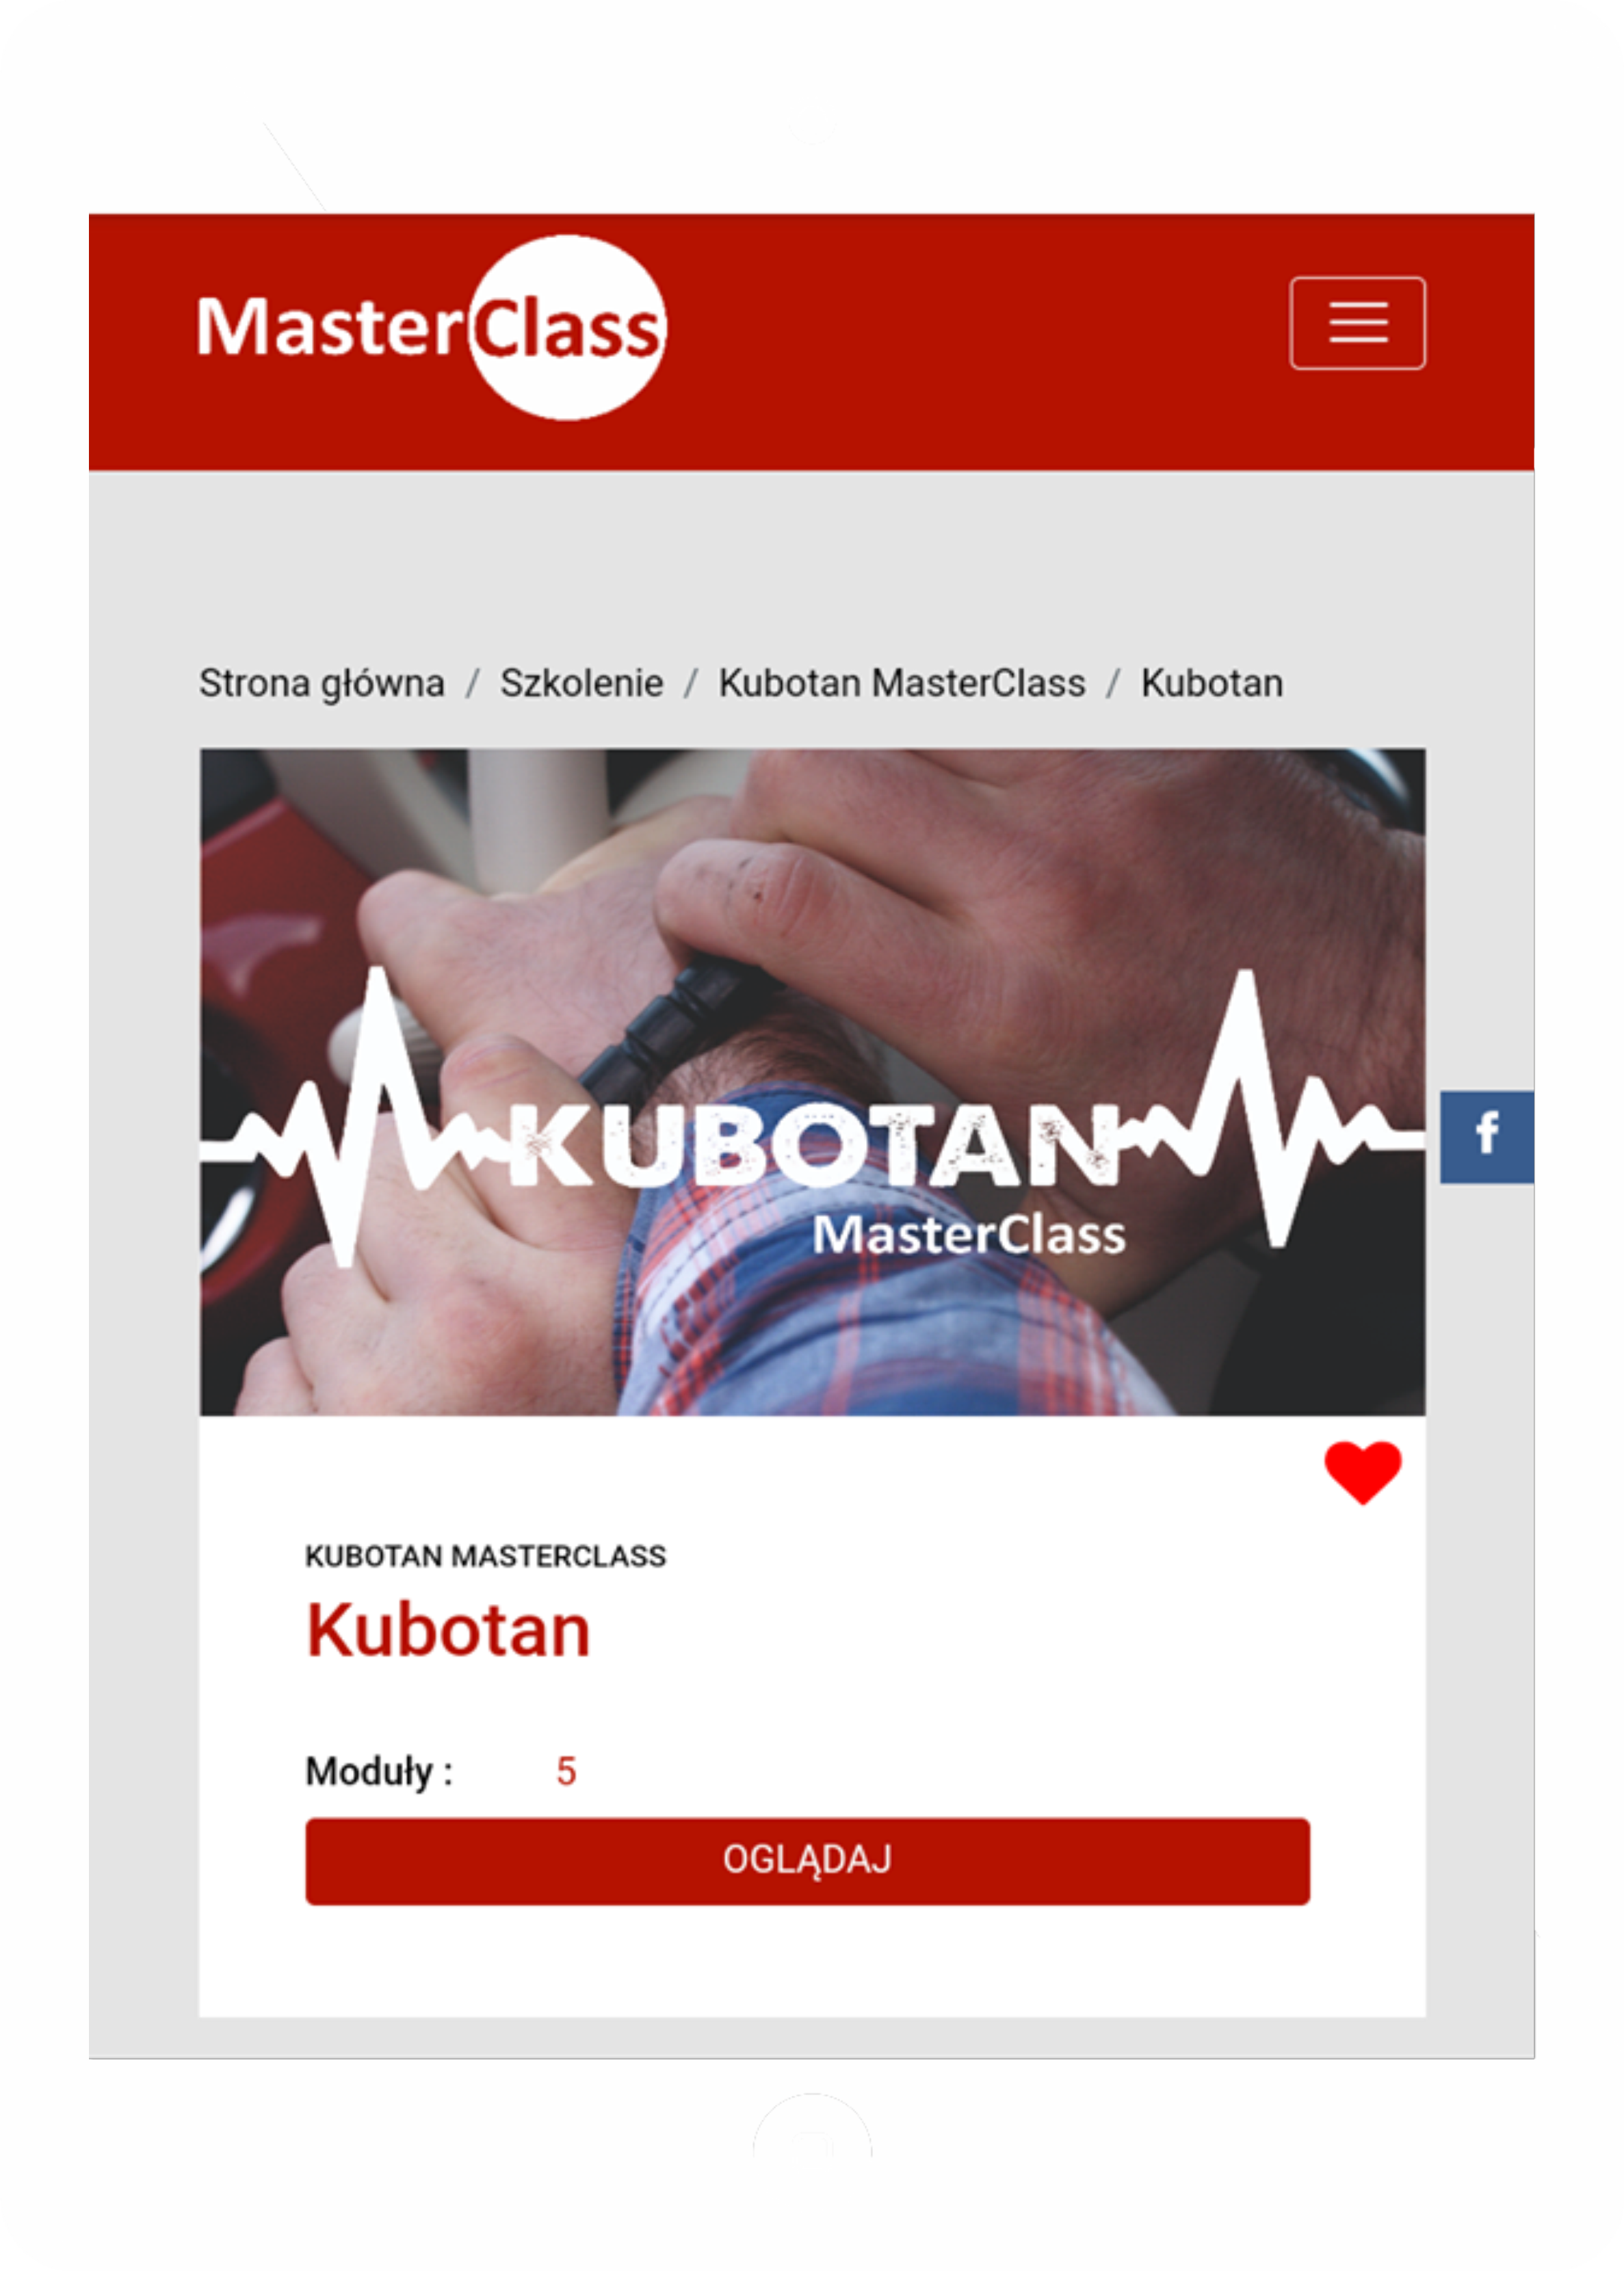 kurs posługiwania się kubotanem - MasterClass